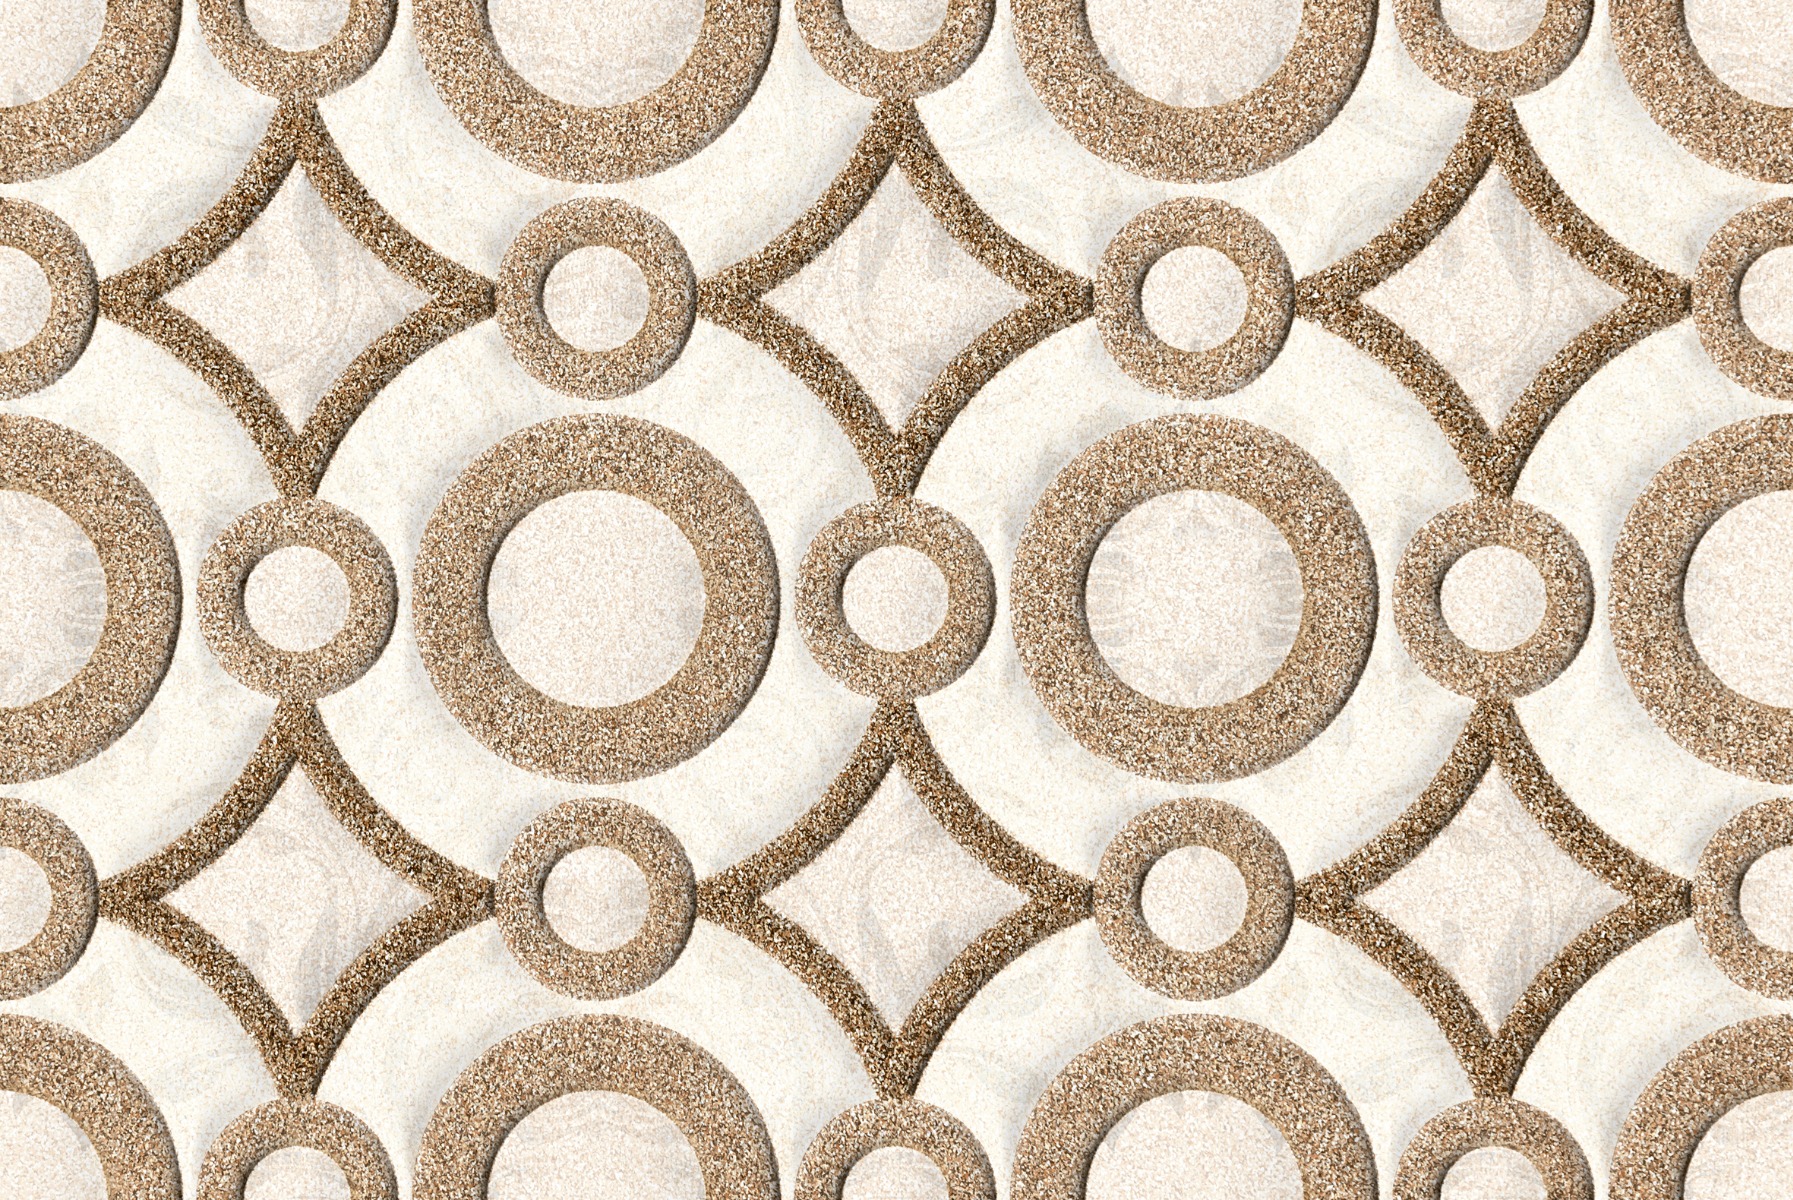 Sandune Tiles for Bathroom Tiles, Kitchen Tiles, Accent Tiles